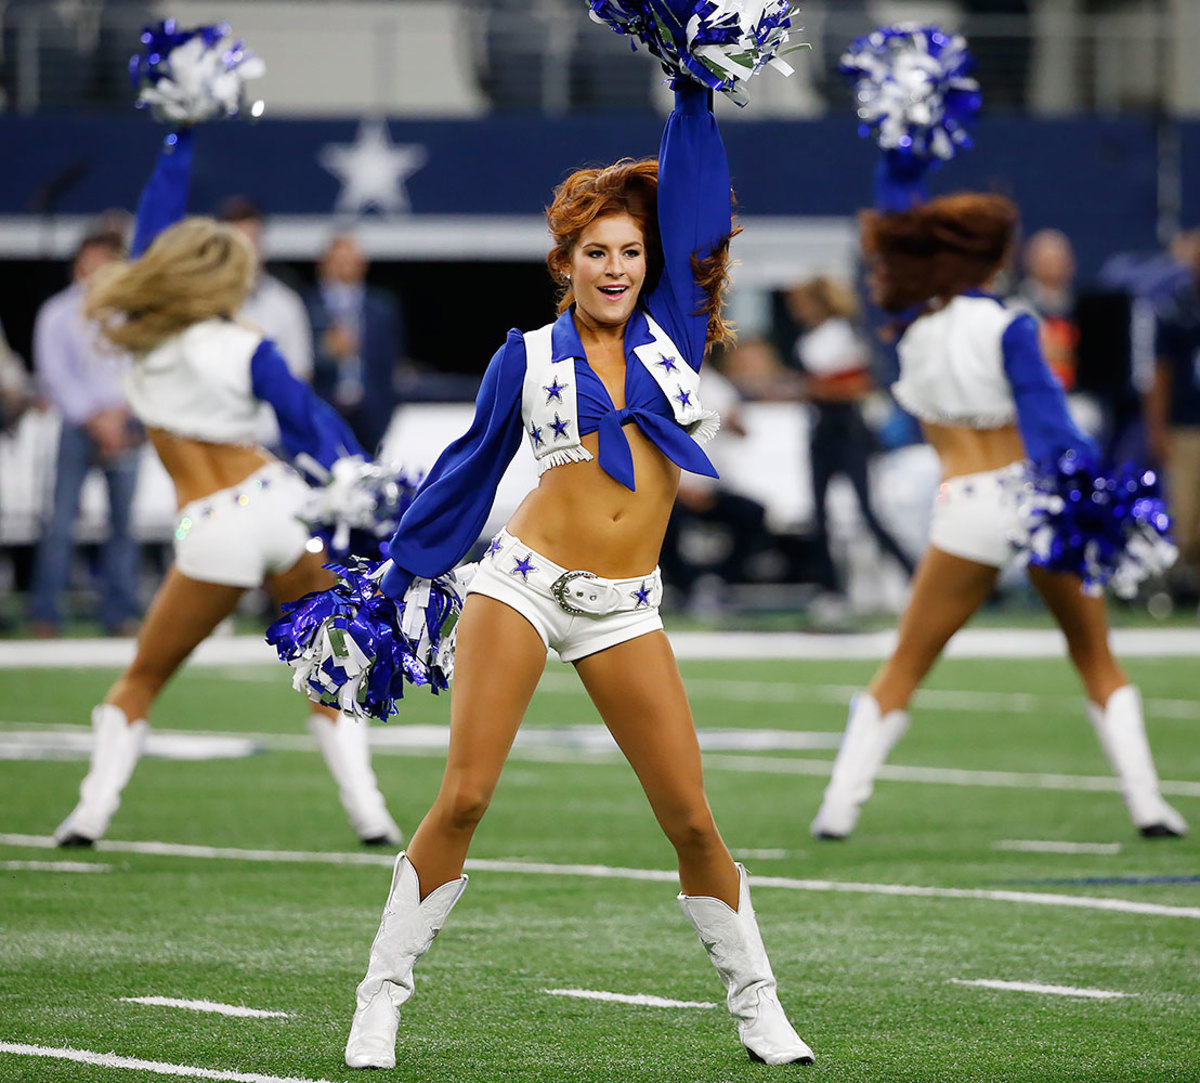 Dallas-Cowboys-cheerleaders-AP_510437018435.jpg